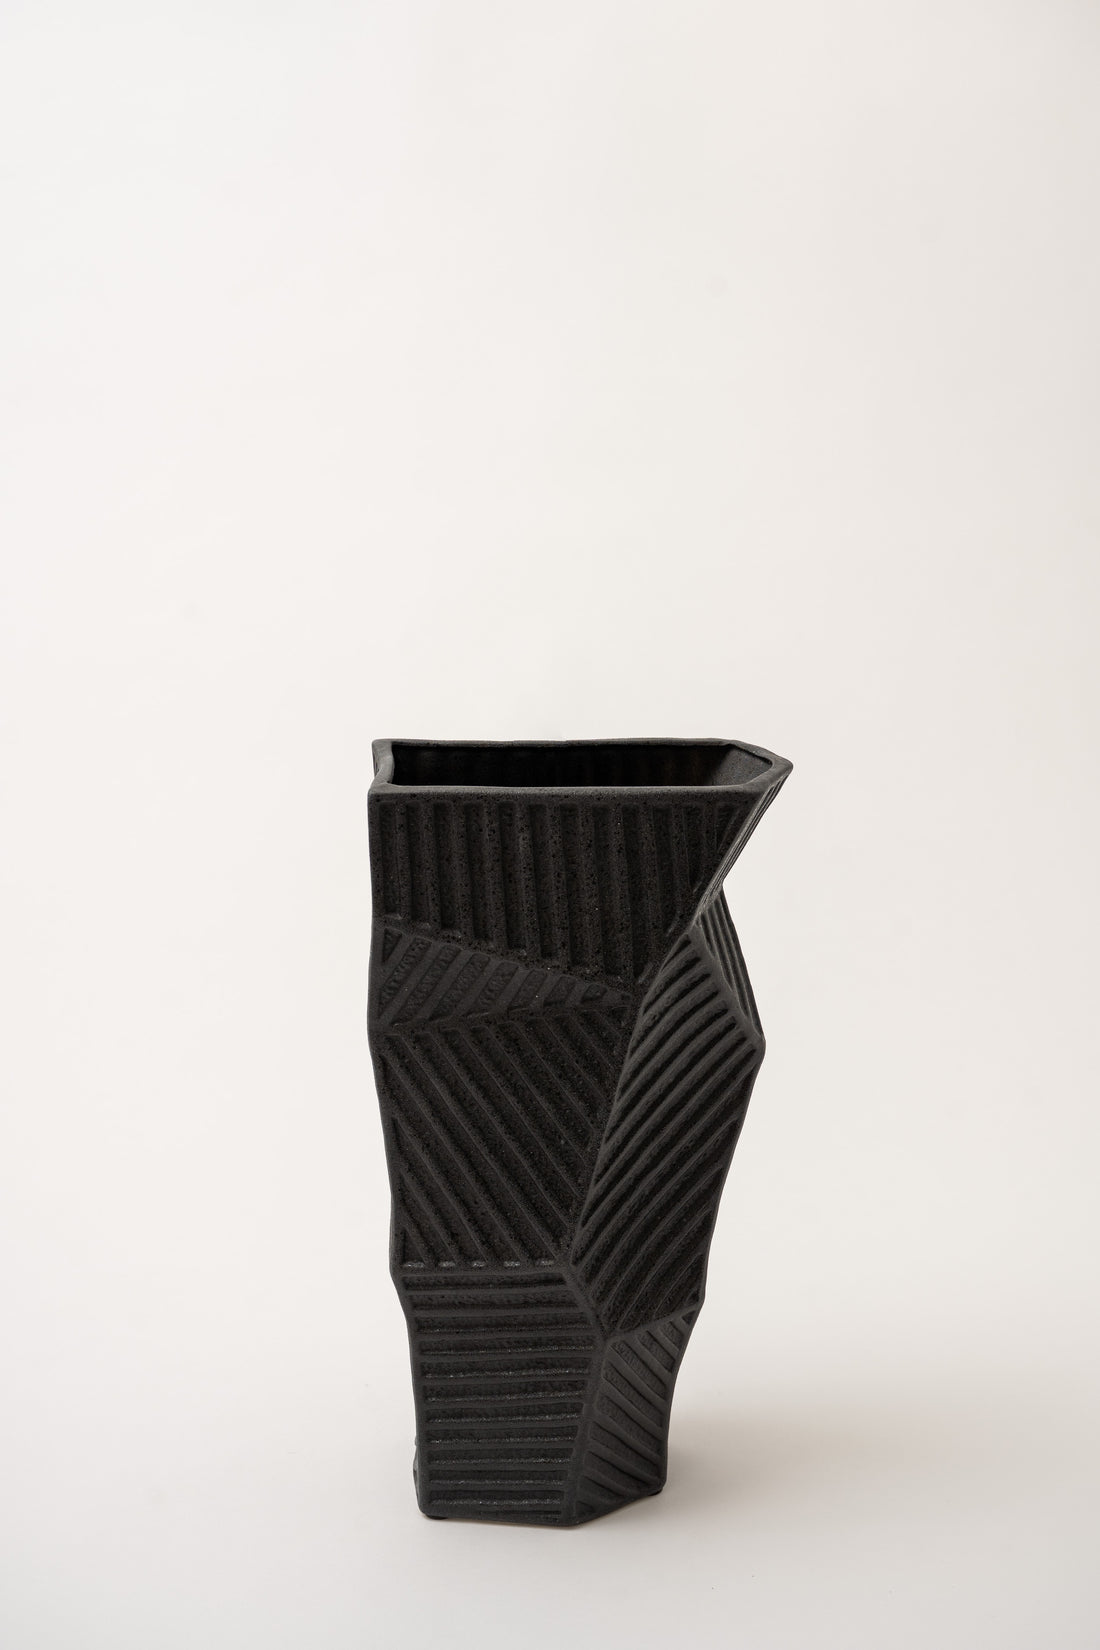 Feilding Vase - Black